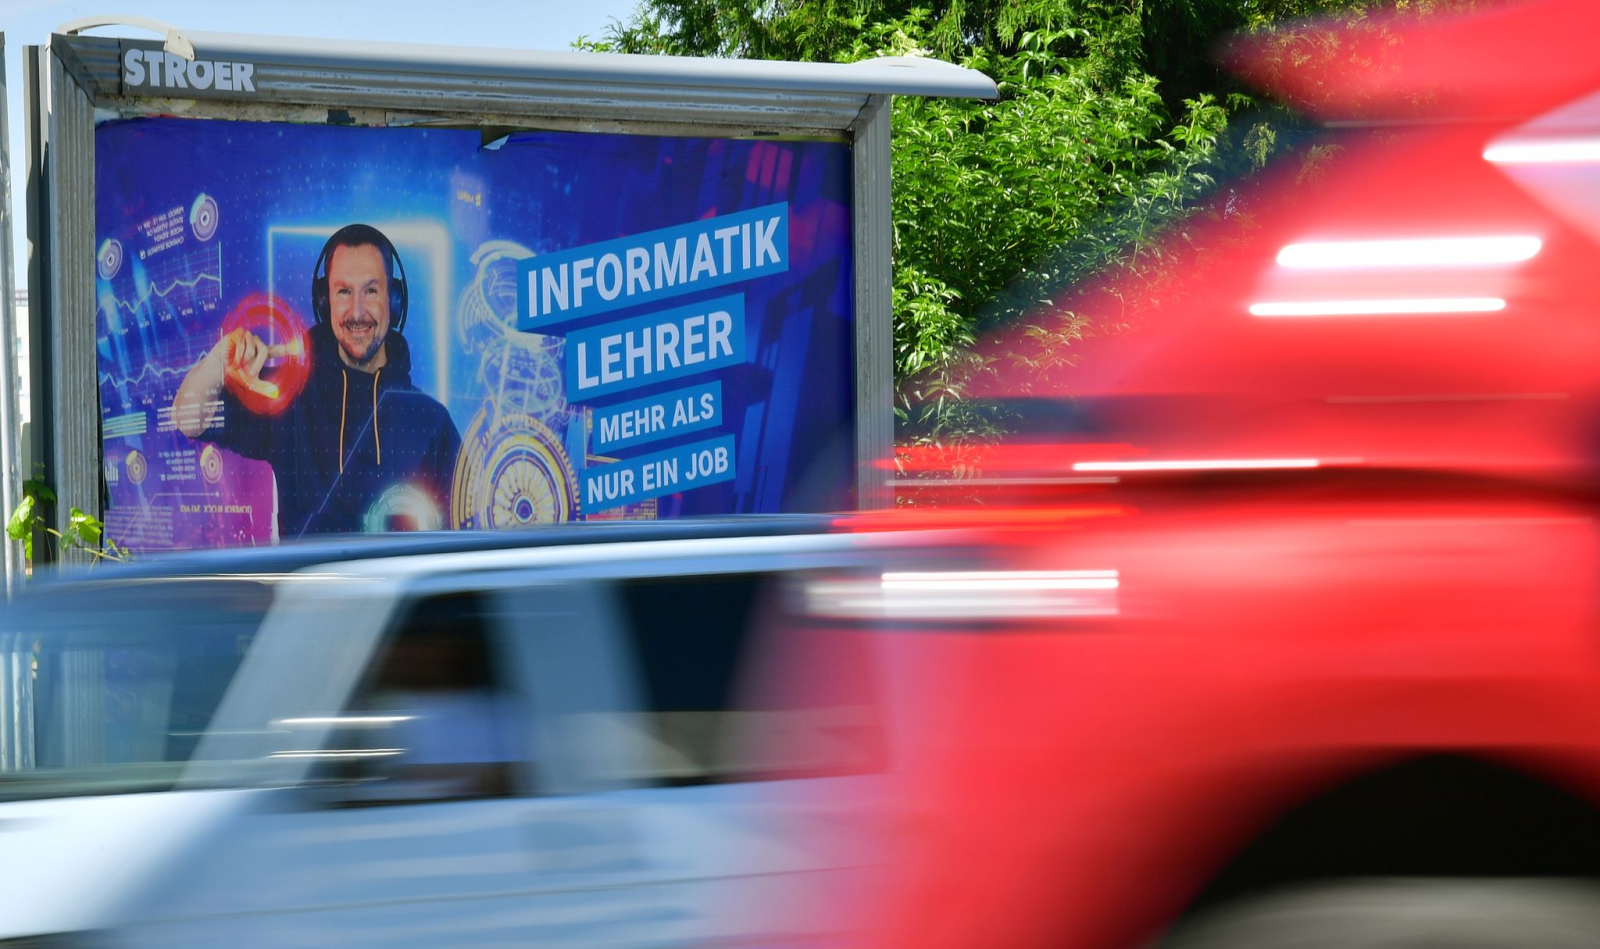 Autos fahren an einem Plakatmotiv der Thüringer Lehrergewinnungskampagne vorbei.